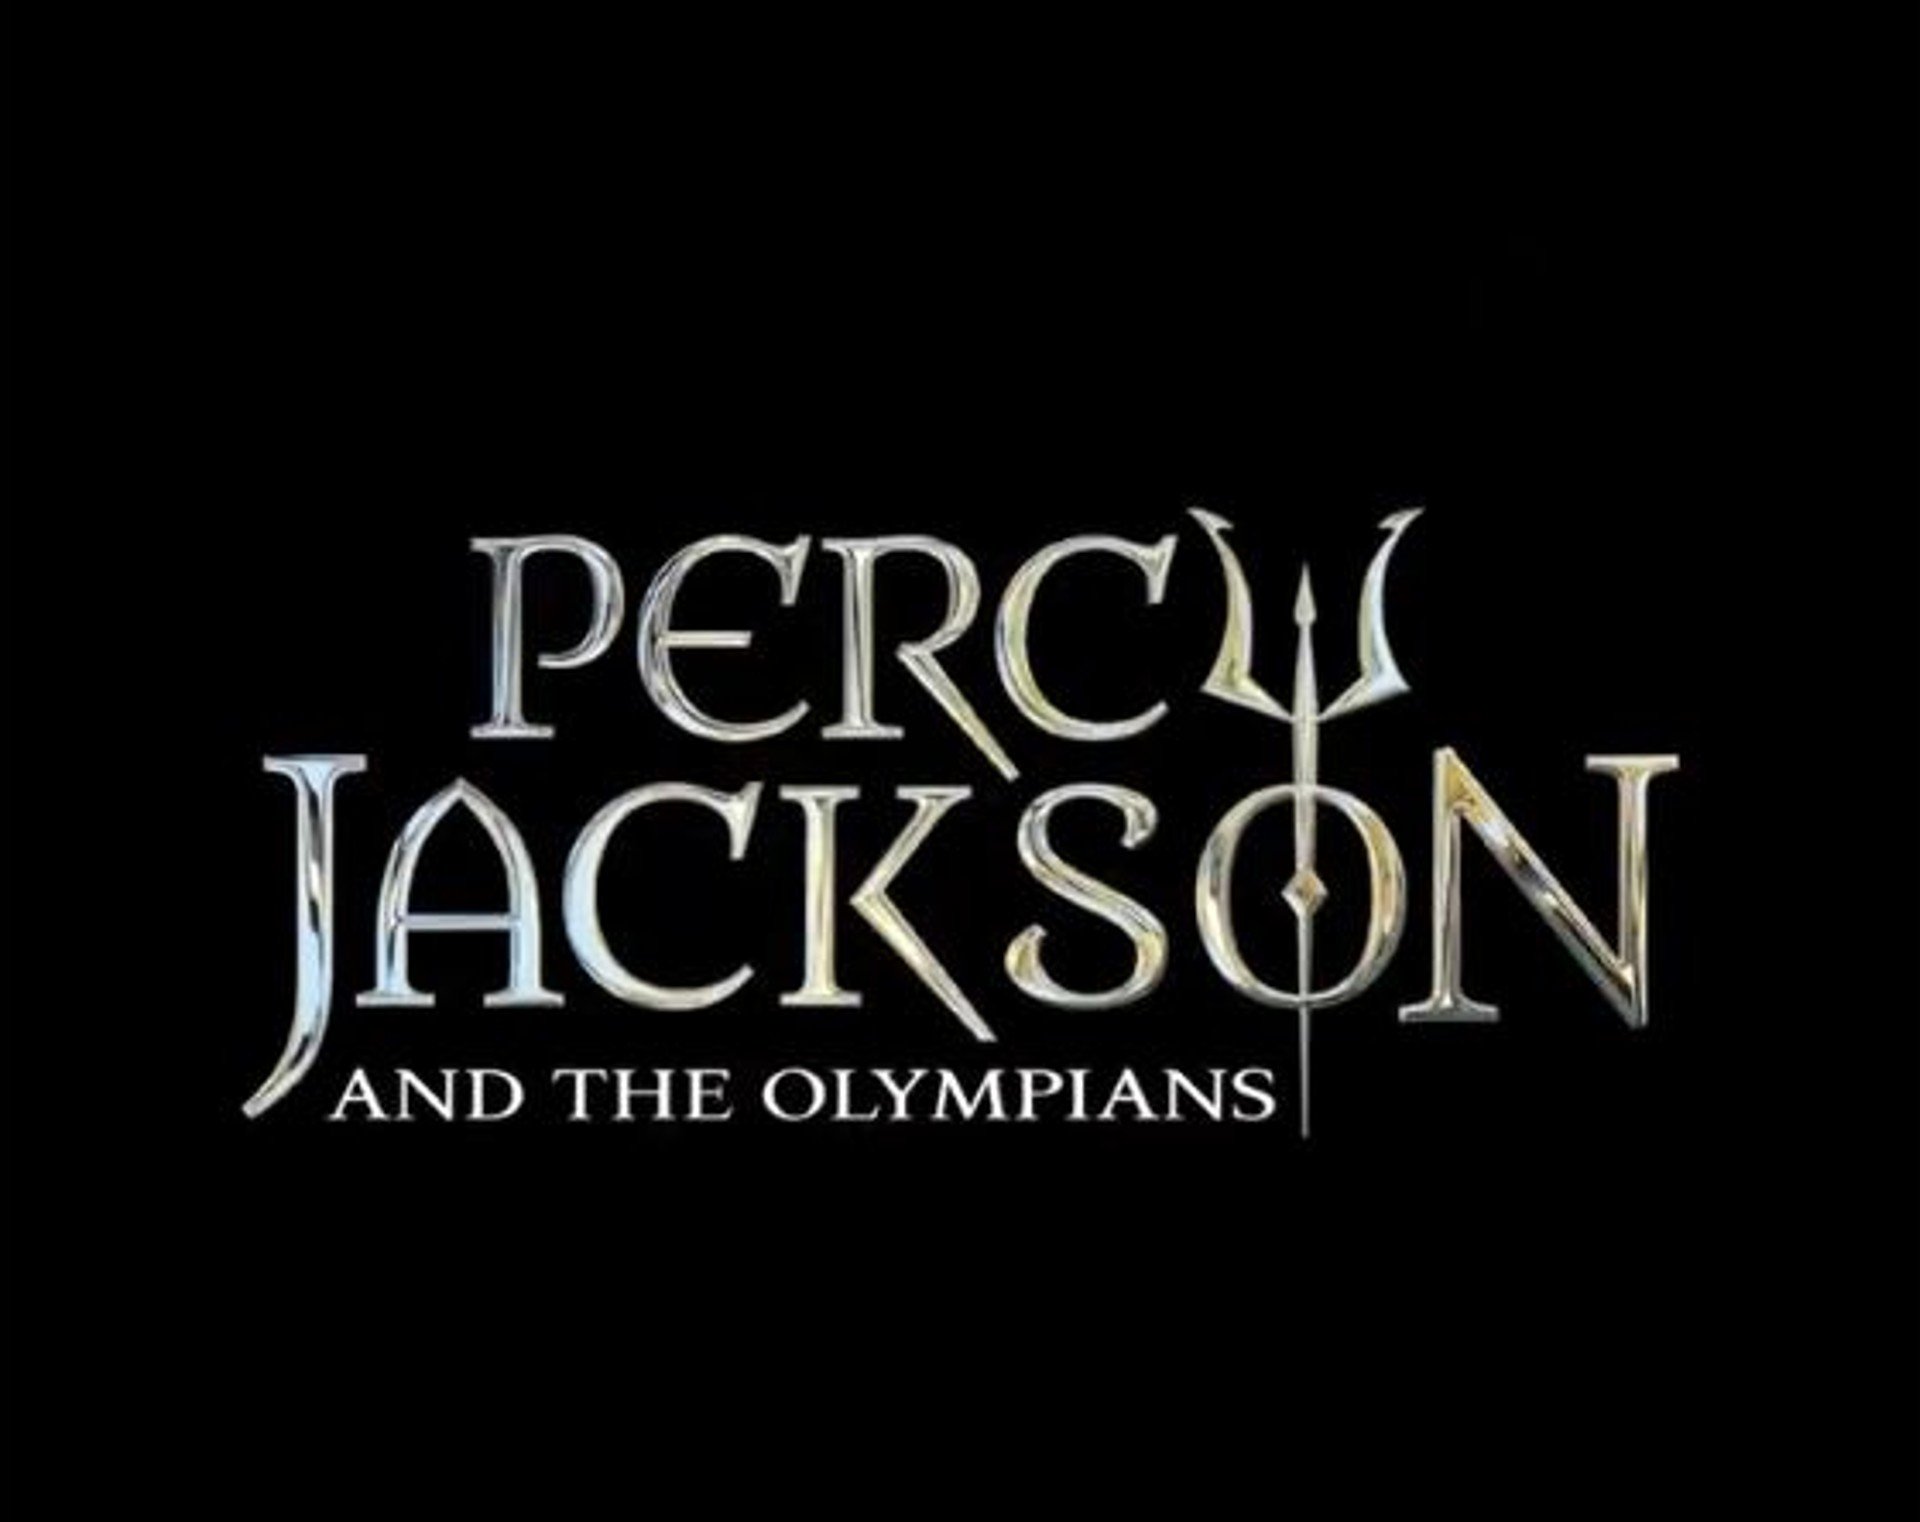 Percy Jackson ได้รับการอนุมัติให้สร้างซีรีส์อย่างเป็นทางการจาก Disney+